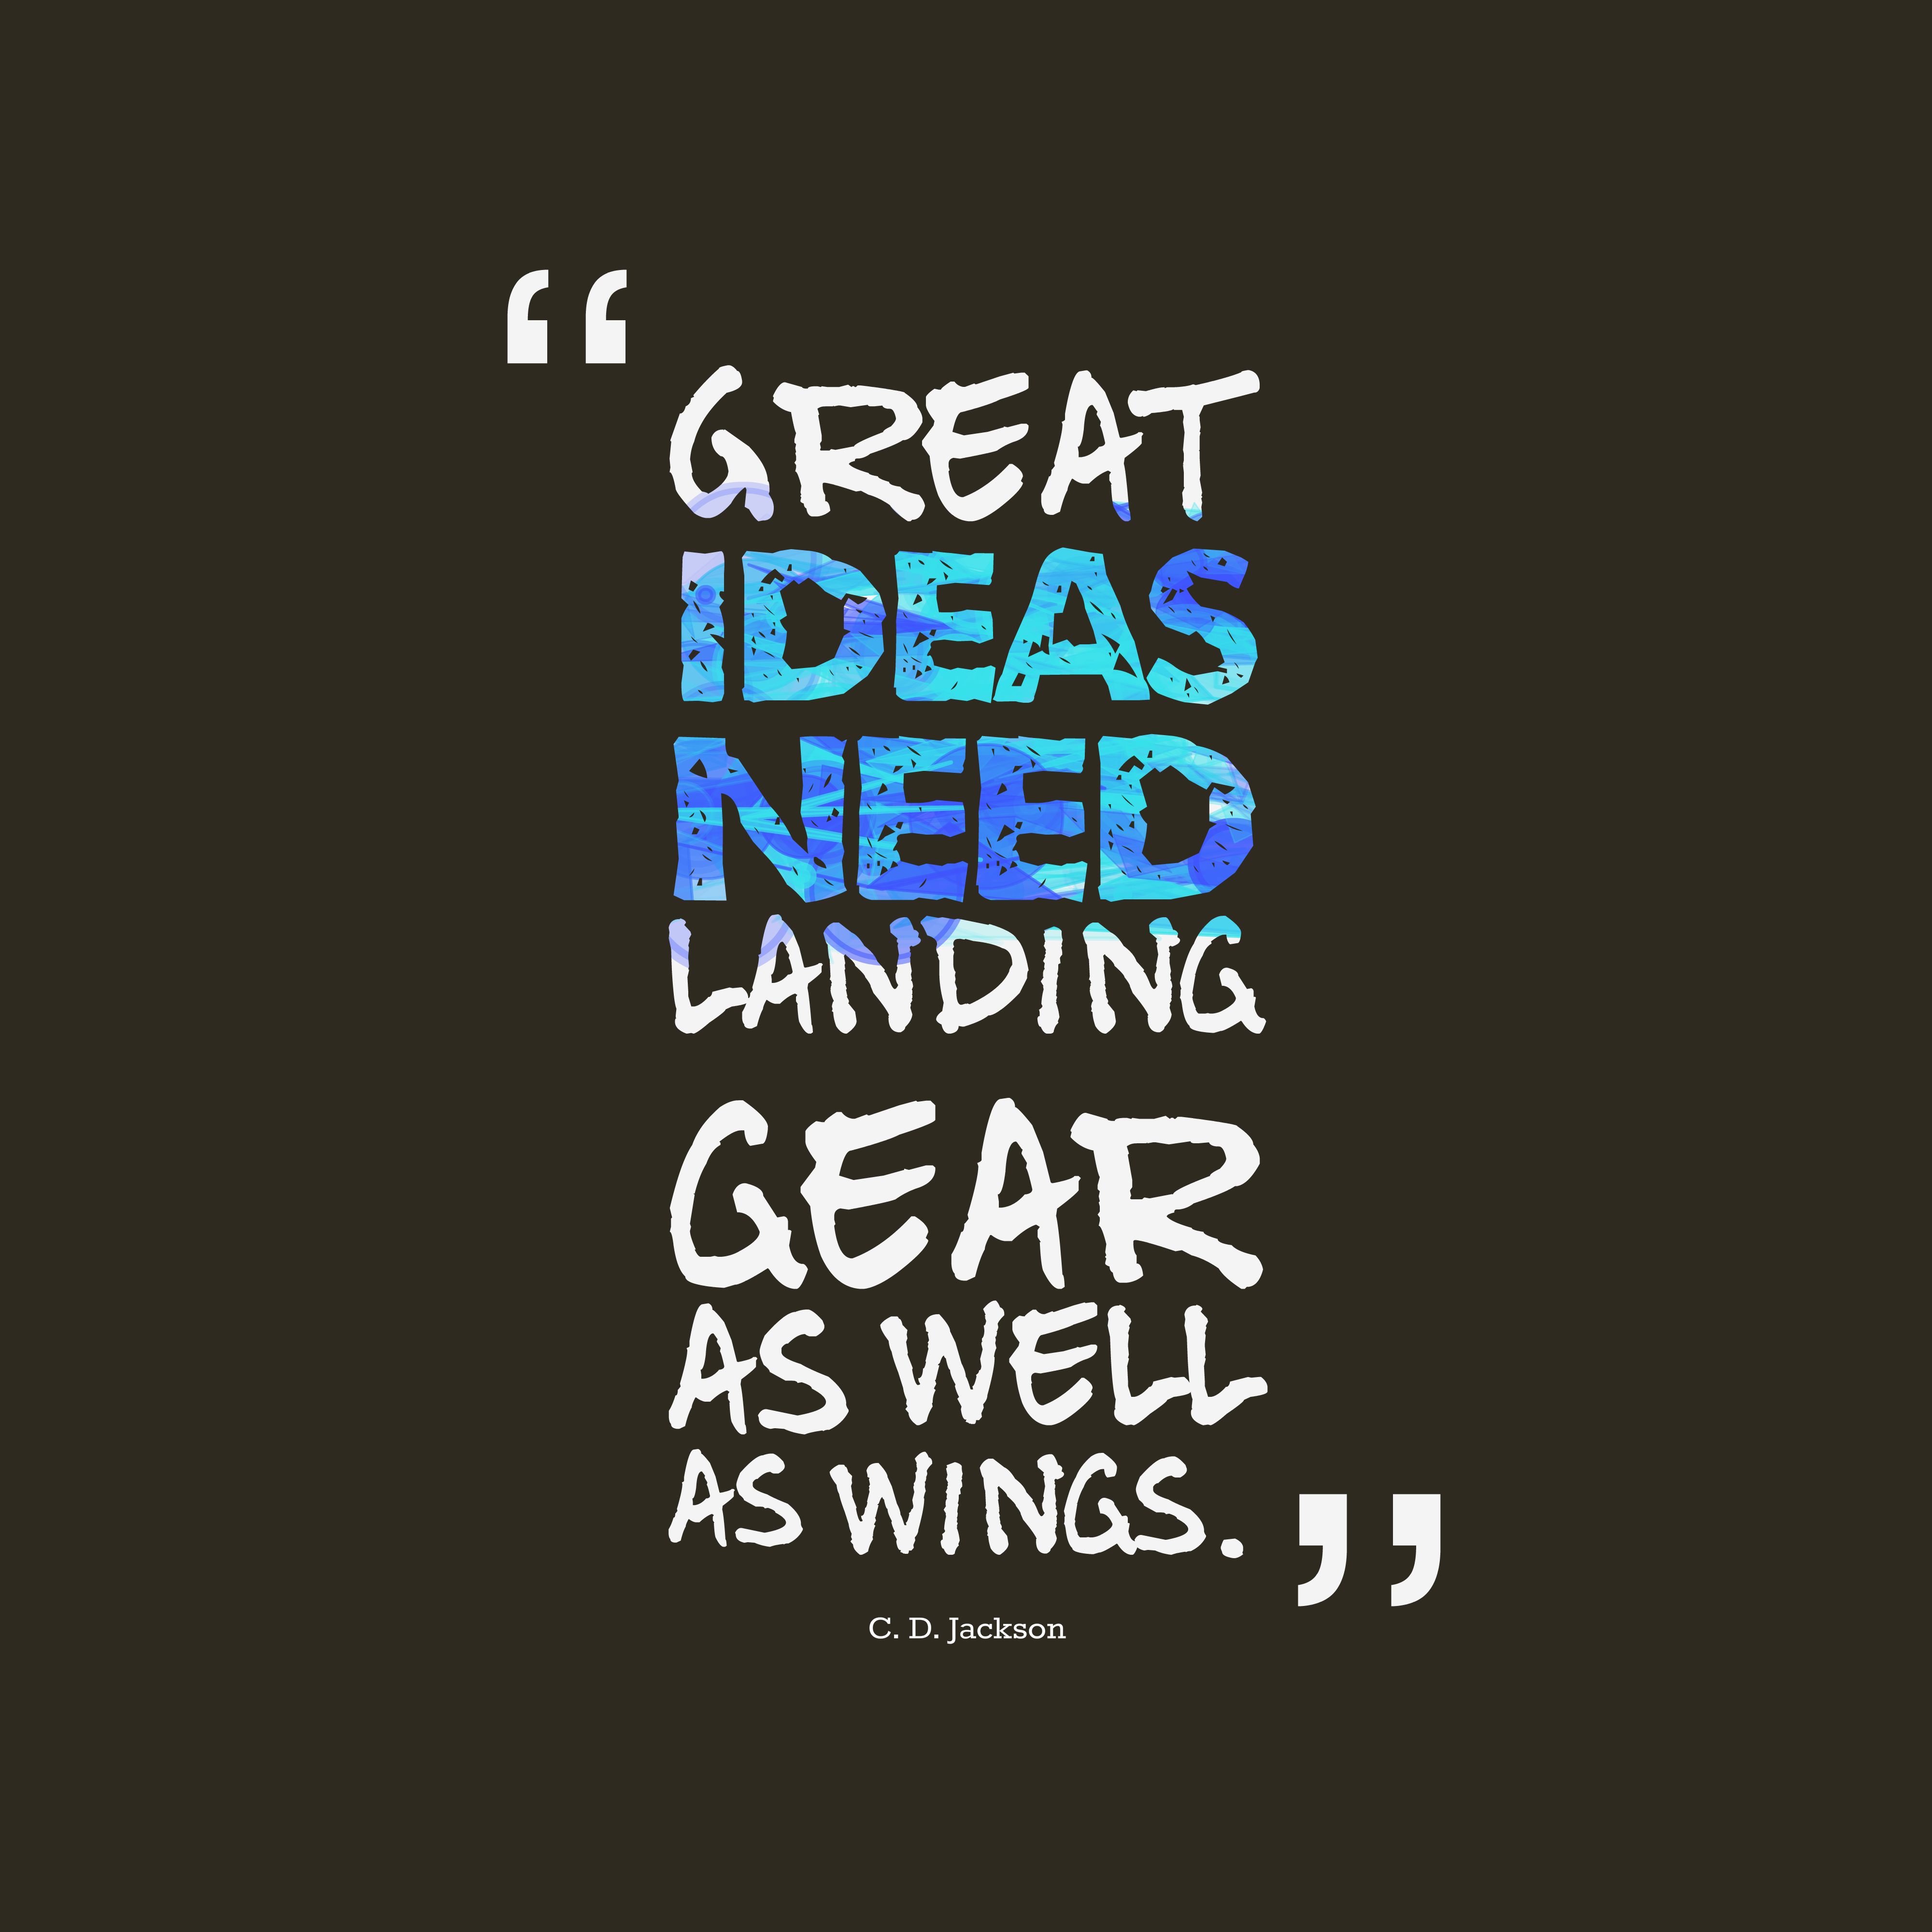 Great ideas need landing gear as well as wings. C.D. Jackson